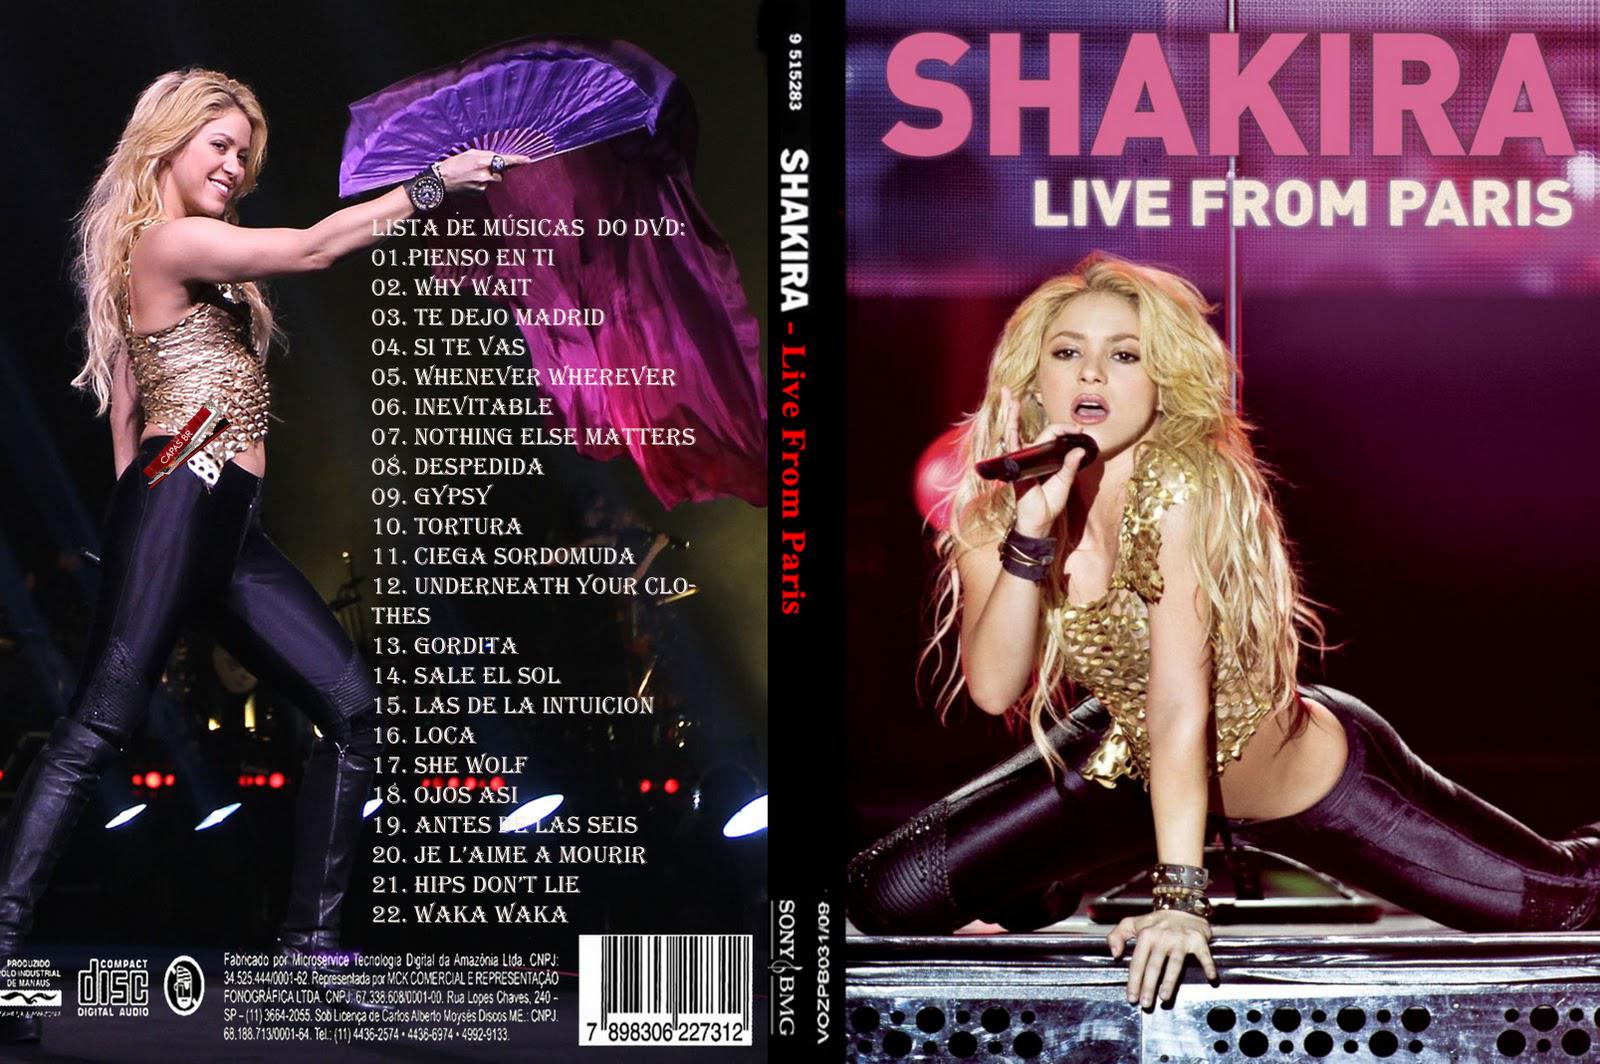 http://4.bp.blogspot.com/-gpW3YnJcGXY/Tt_k-RWuC8I/AAAAAAAASN4/Ayaia9y-zJY/s1600/Shakira+-+Live+from+Paris++2011.jpg